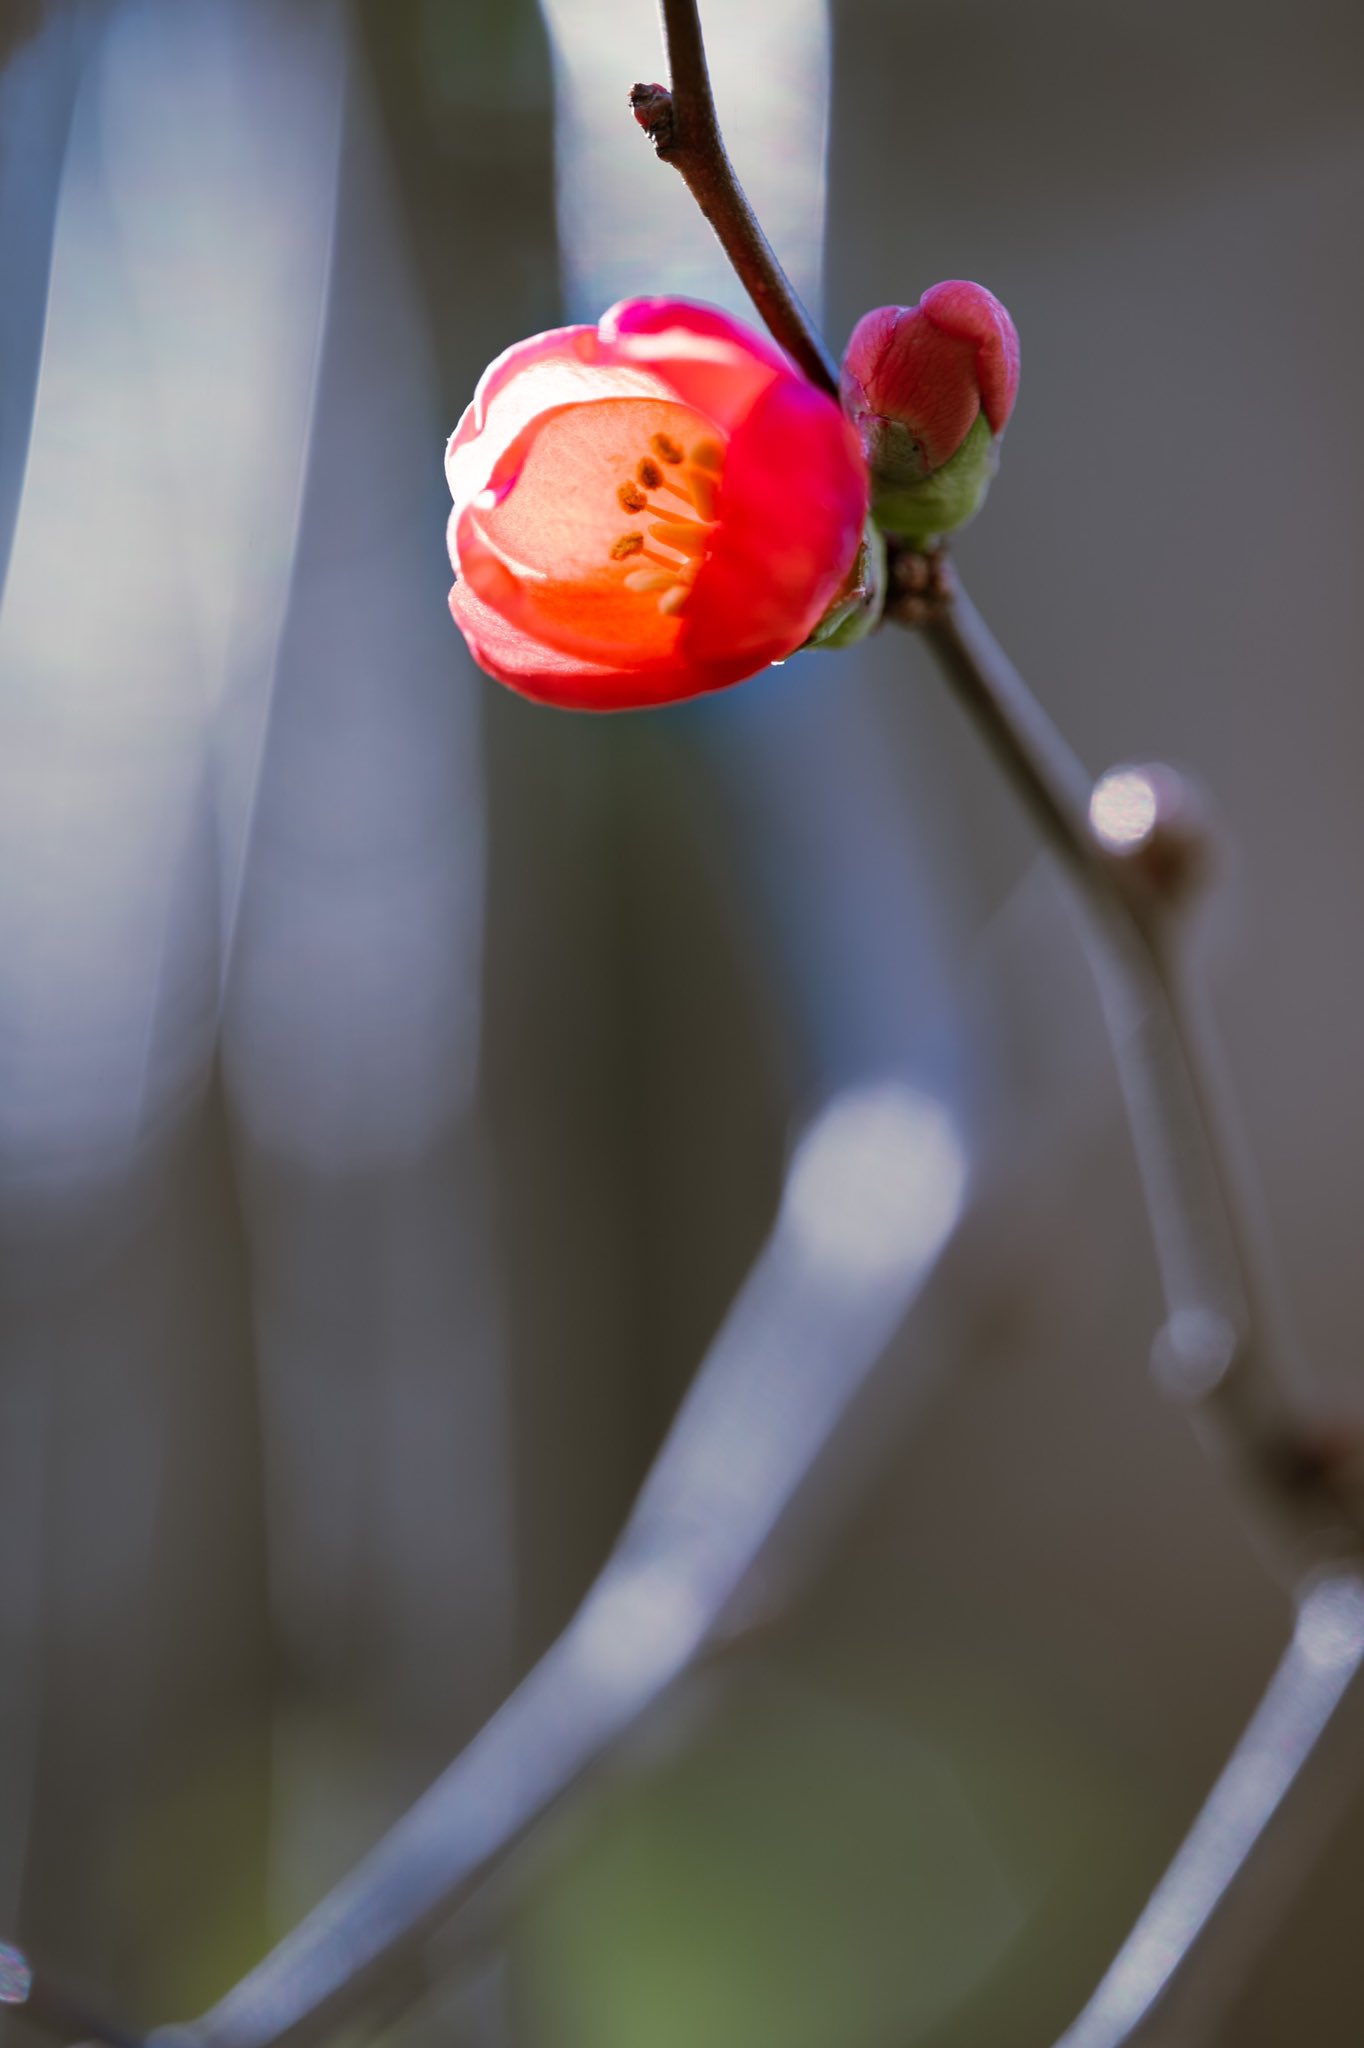 Takao 寒木瓜 カンボケが咲いていました 中国原産 バラ科 日本には平安時代に渡来しました 普通のボケは3 4月に咲きますがカンボケは早咲きで11 12月に咲きます 木瓜は織田信長の家紋 織田木瓜 おだもっこう にもつかわれています 花言葉は 情熱